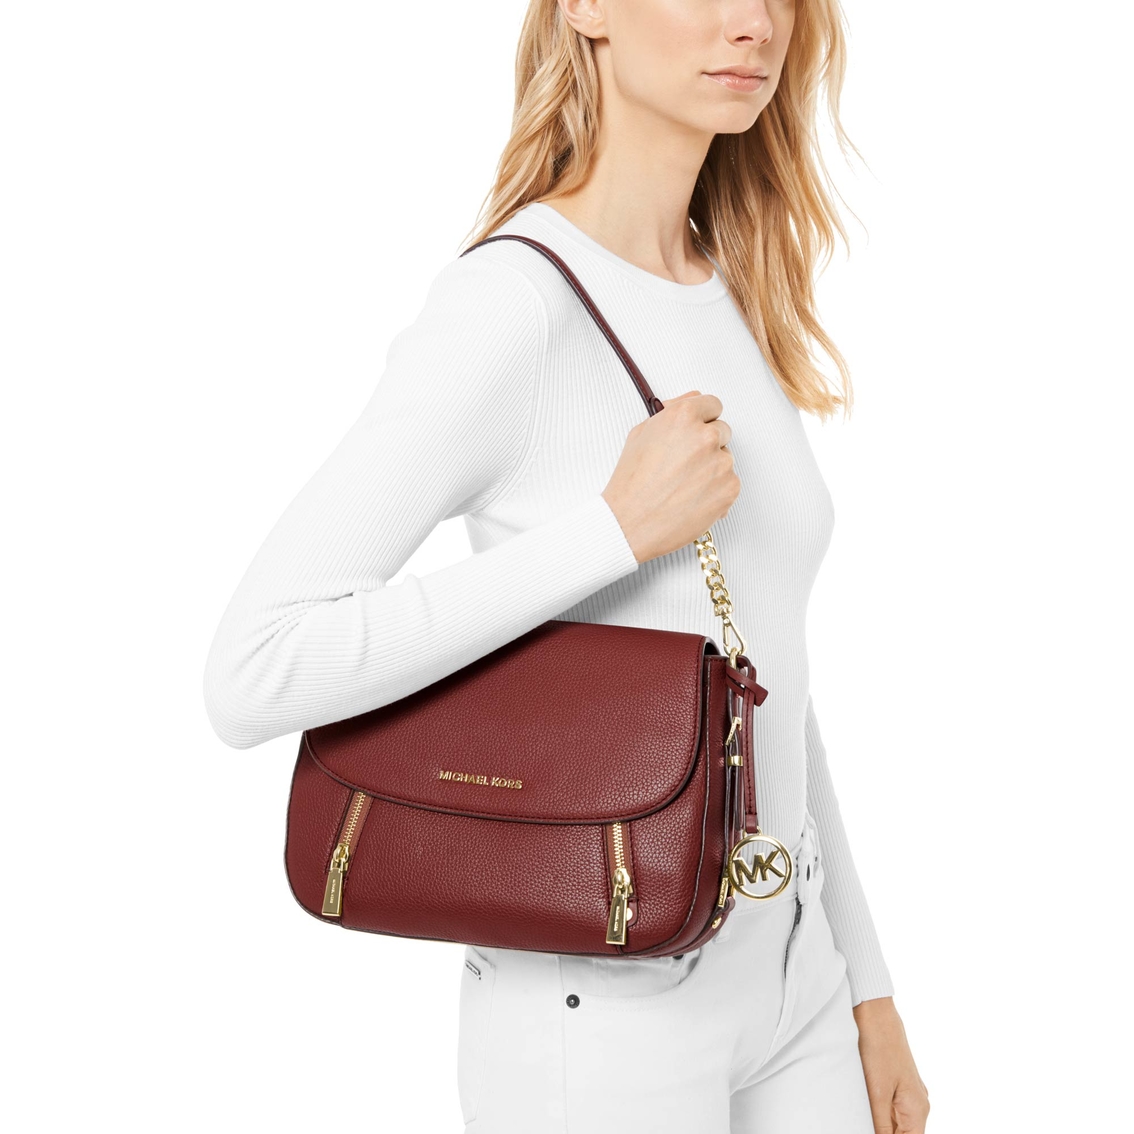 Michael Kors Bedford Legacy Medium Flap Leather Shoulder Handbag - Image 4 of 4